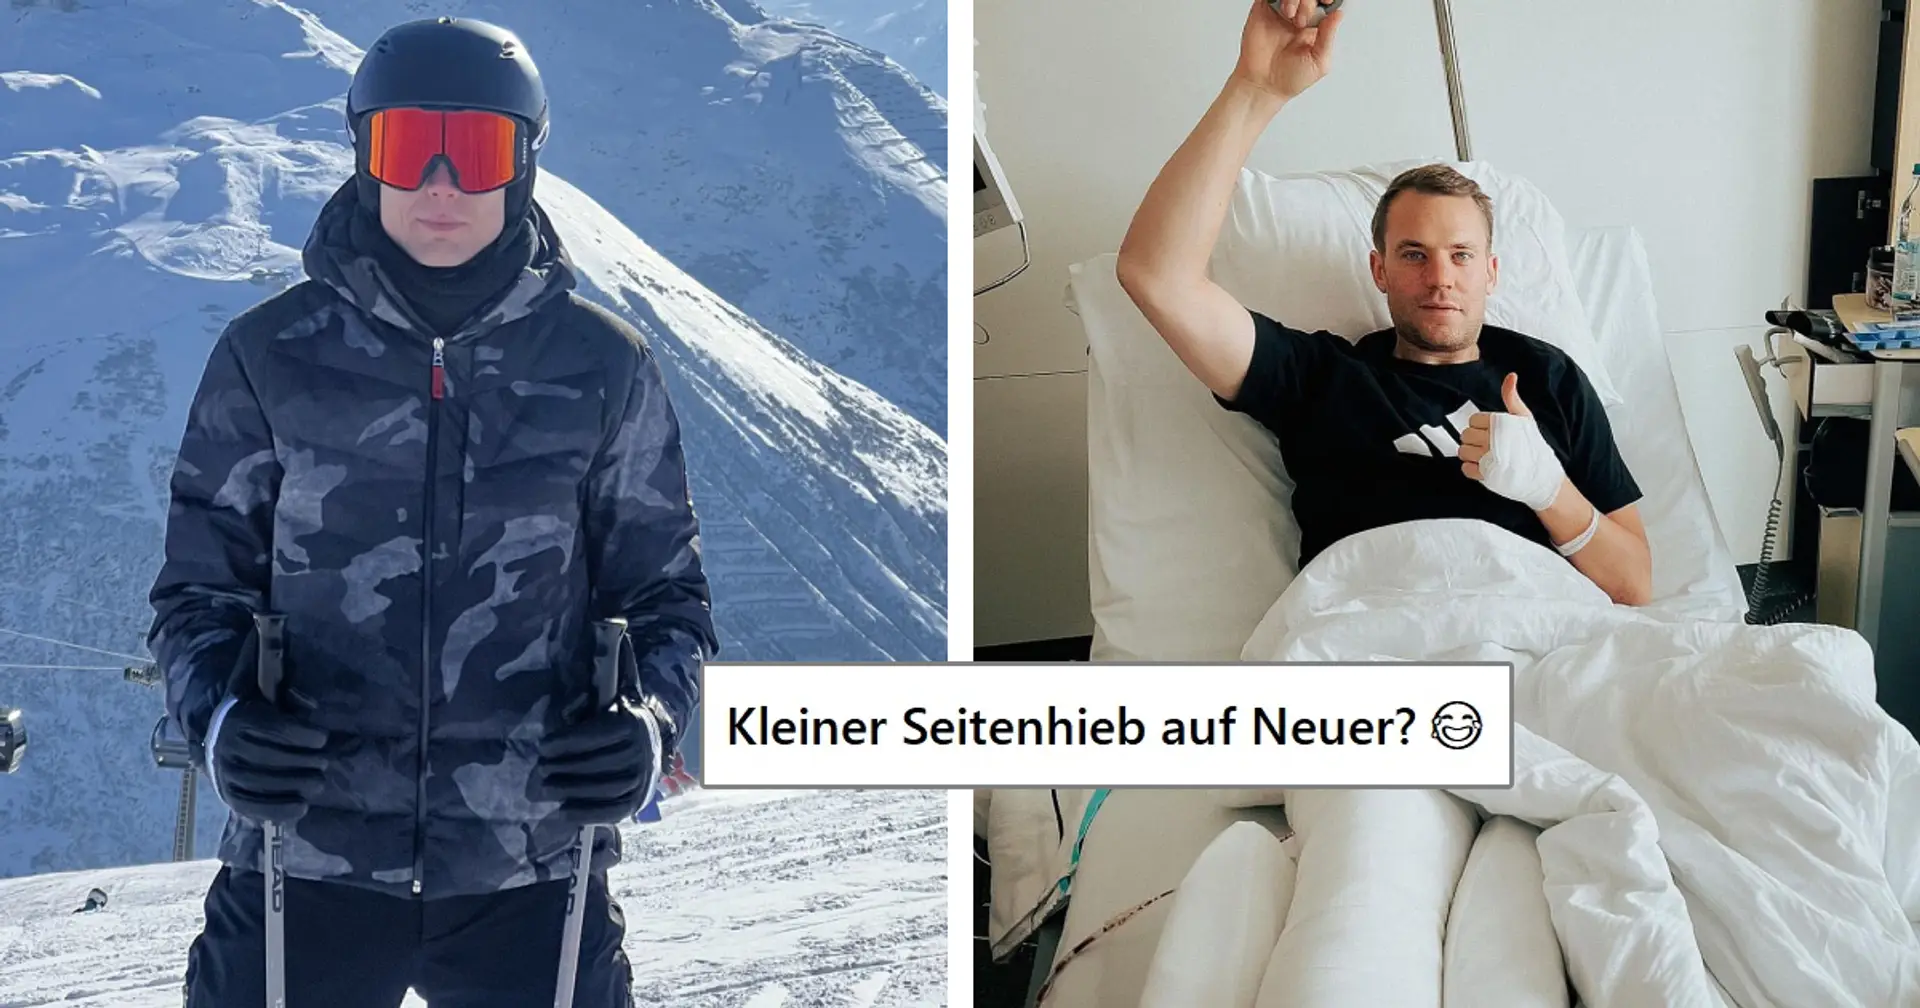 "Über ein Jahrzehnt verzichtet": Badstuber schreibt über seinen Ski-Urlaub, Fans sehen darin Seitenhieb auf Neuer